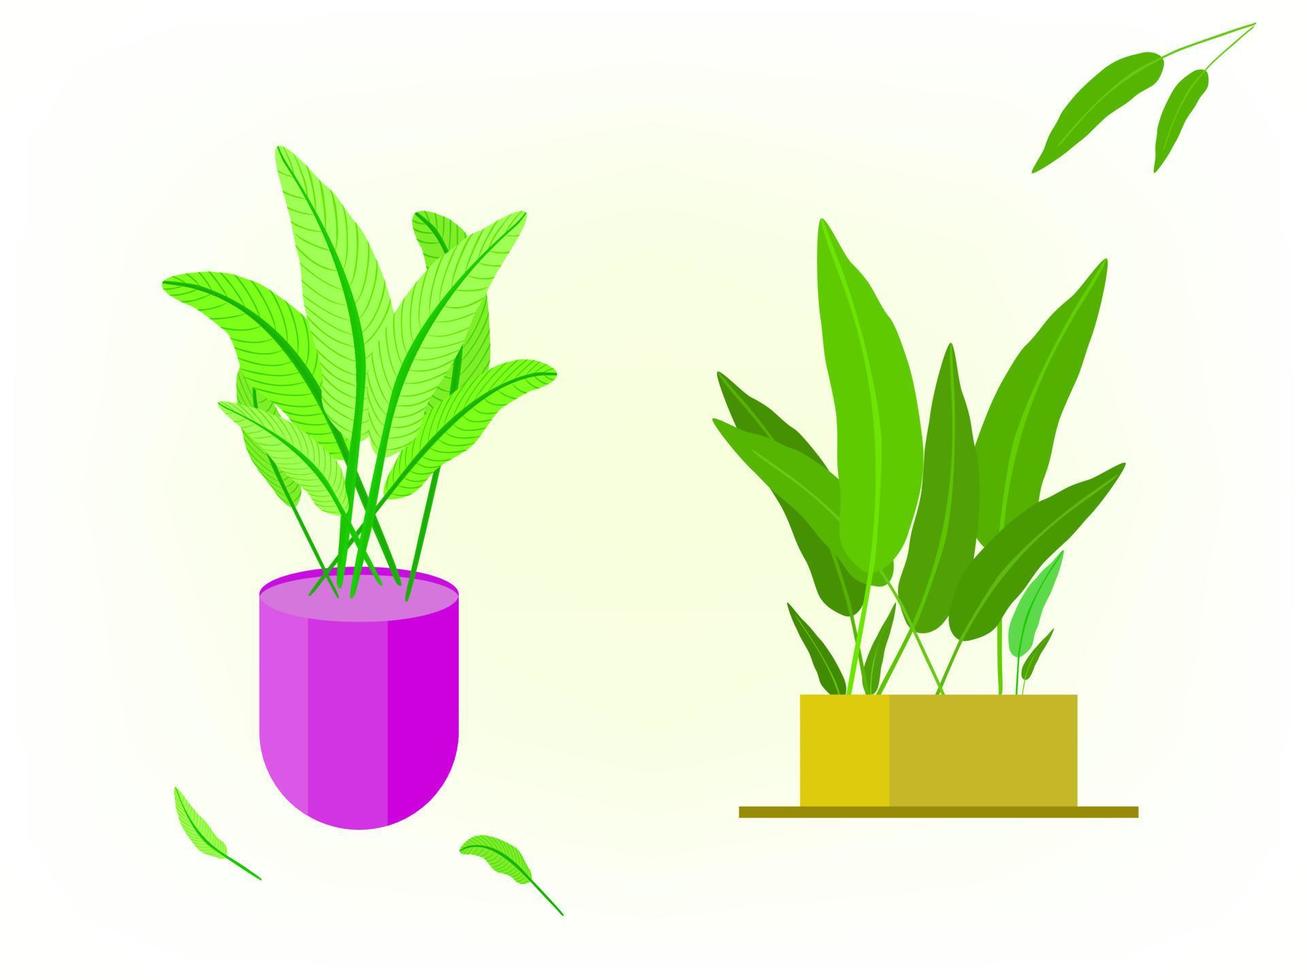 Zimmerpflanzenblumenblatt-Ikonenelement für dekorative Vektorillustration vektor